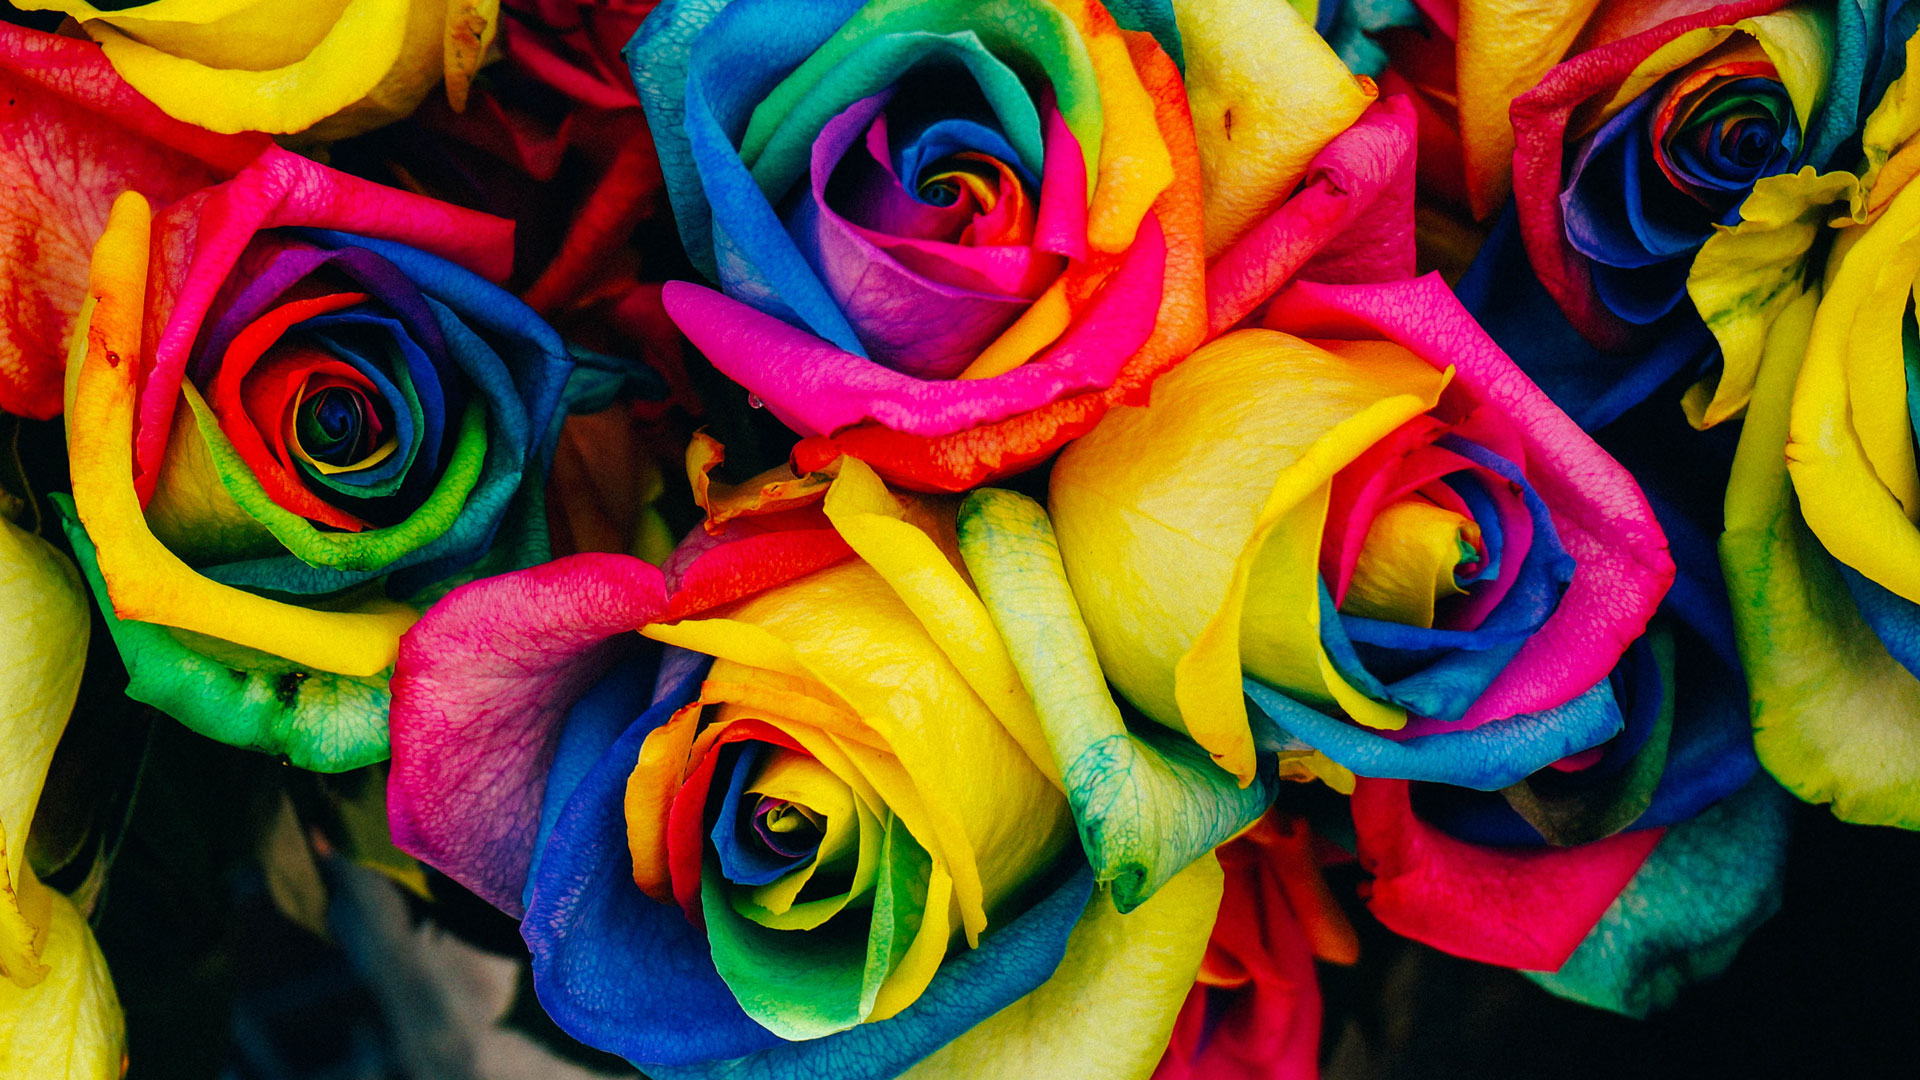 Rainbow petalled roses